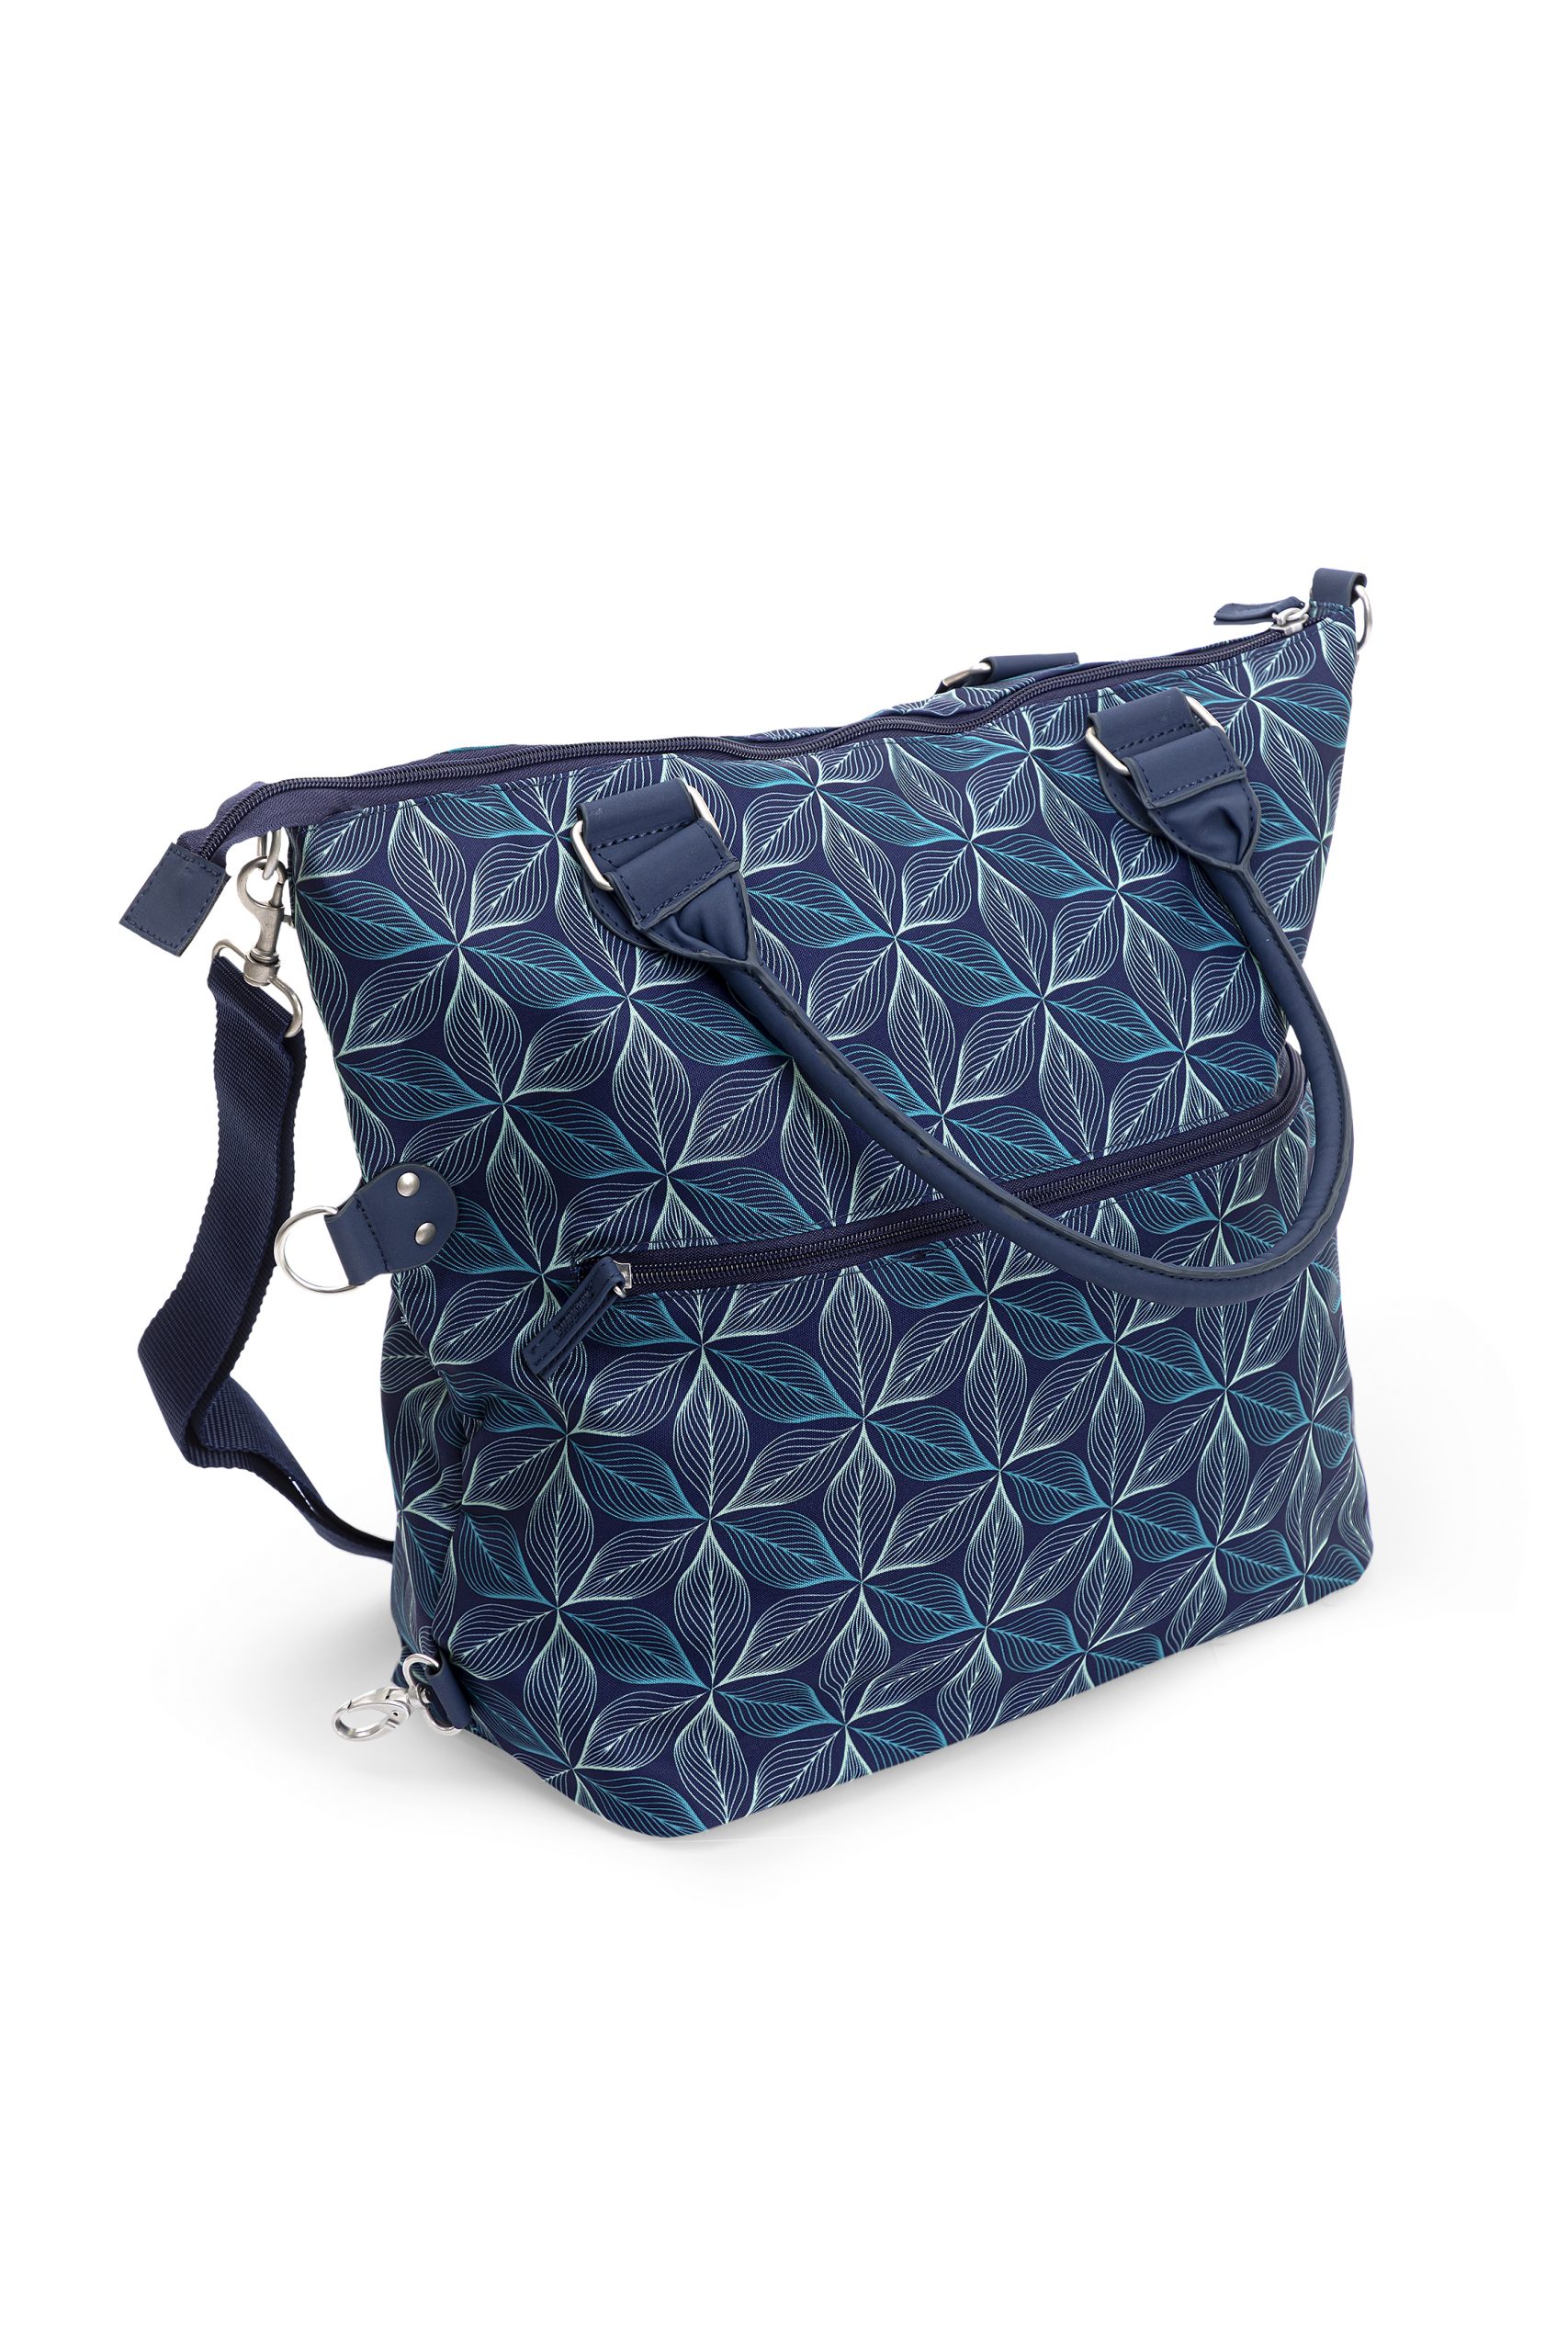 Giordani - smart bag blu - Giordani